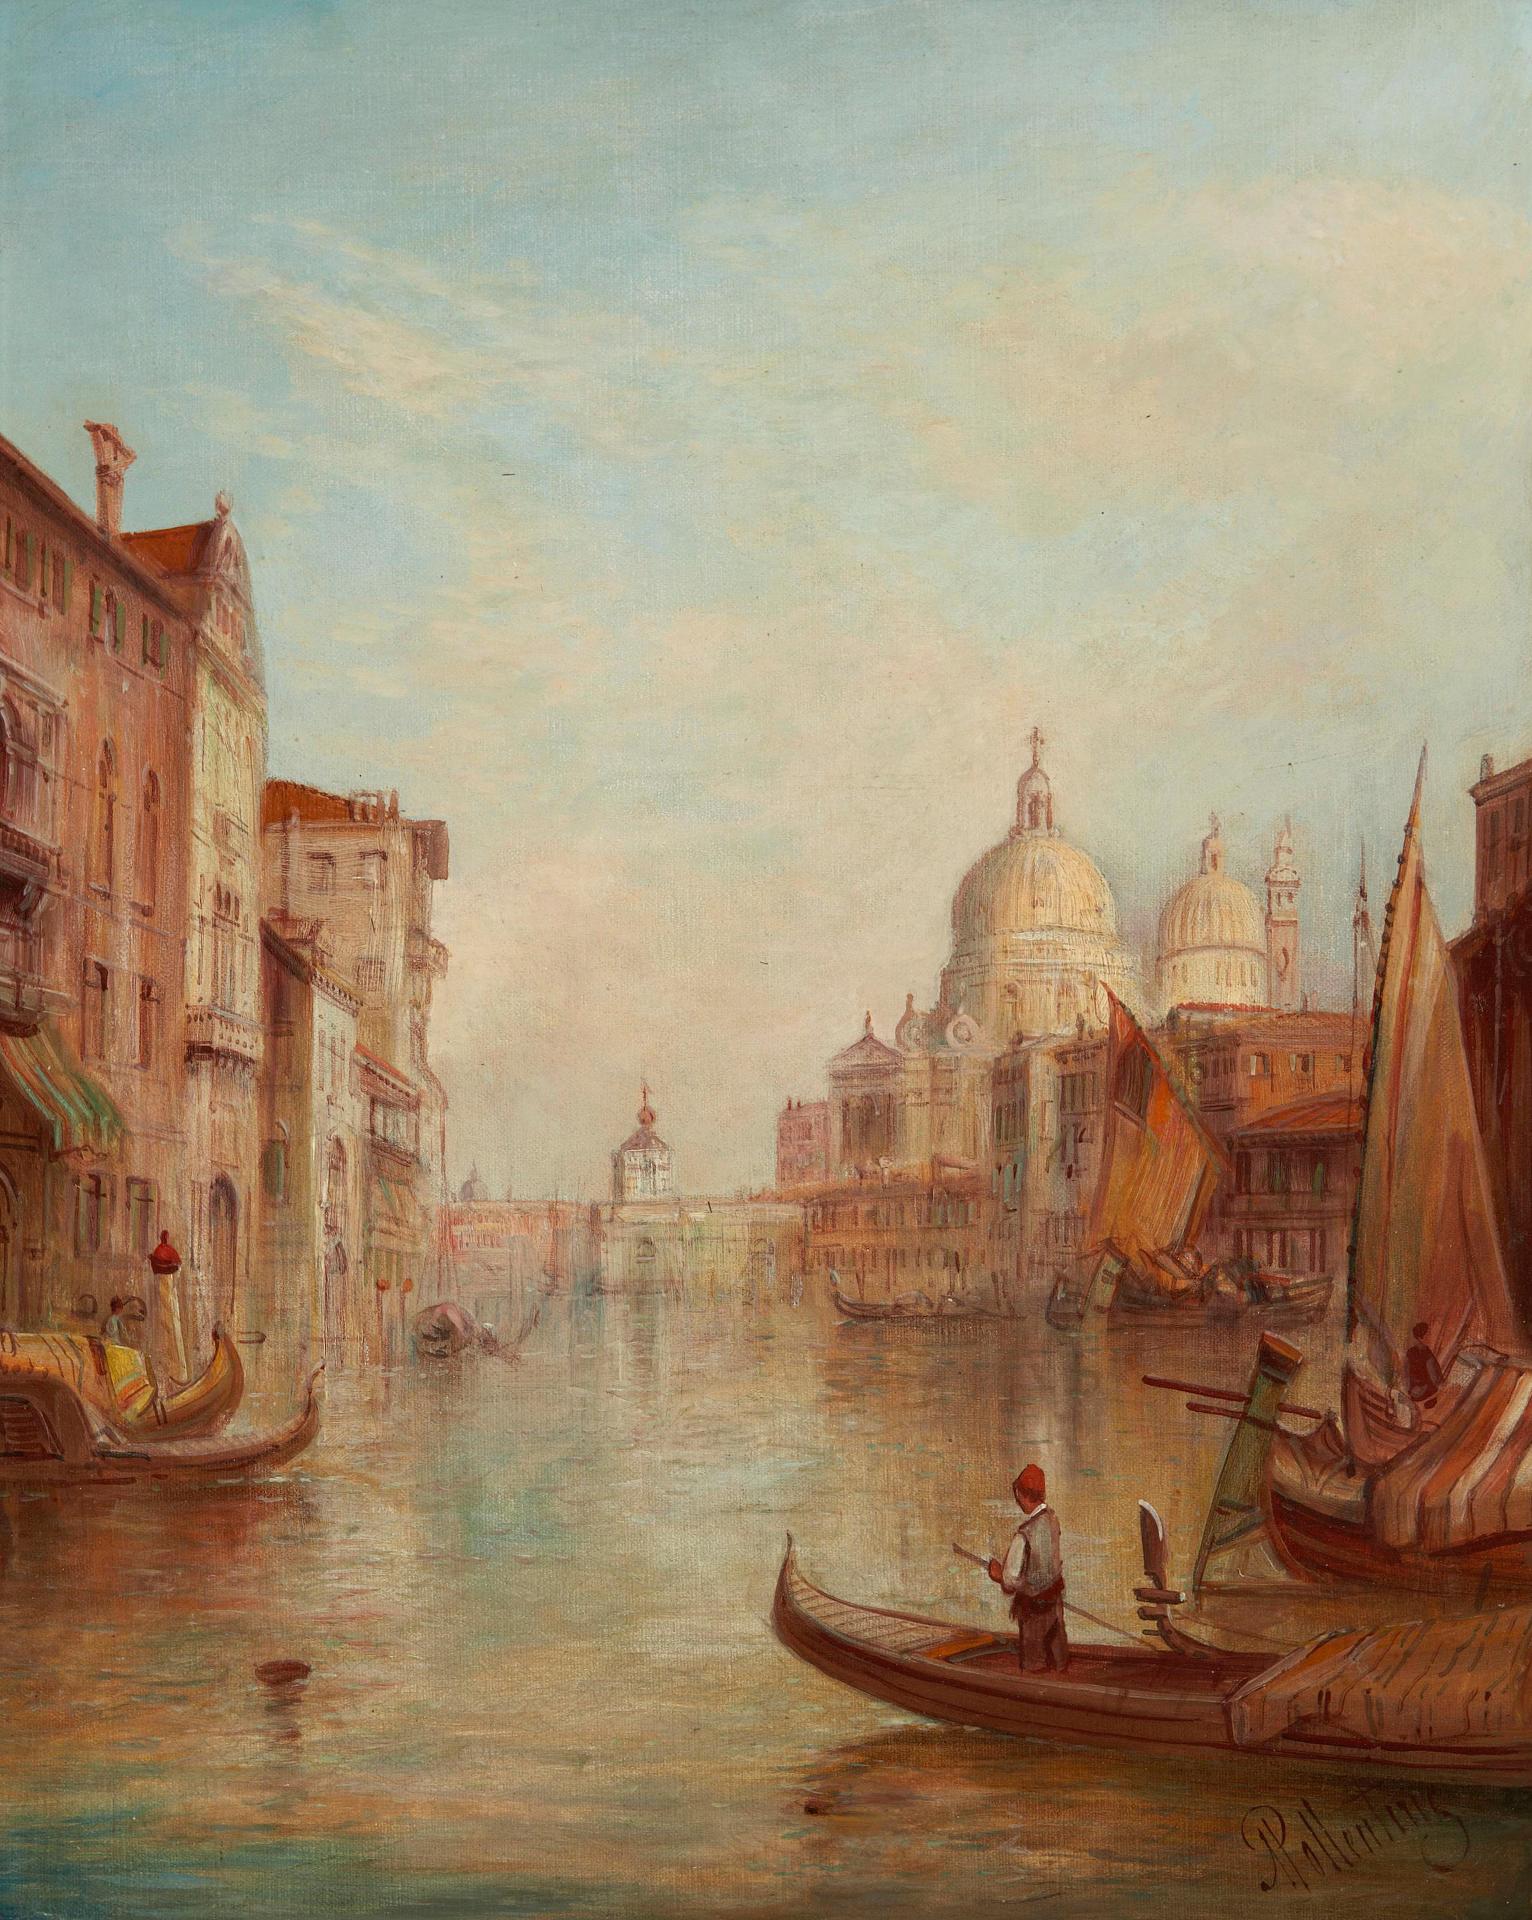 Alfred Pollentine (1836-1890) - The Dogana di Mare and Santa Maria della Salute